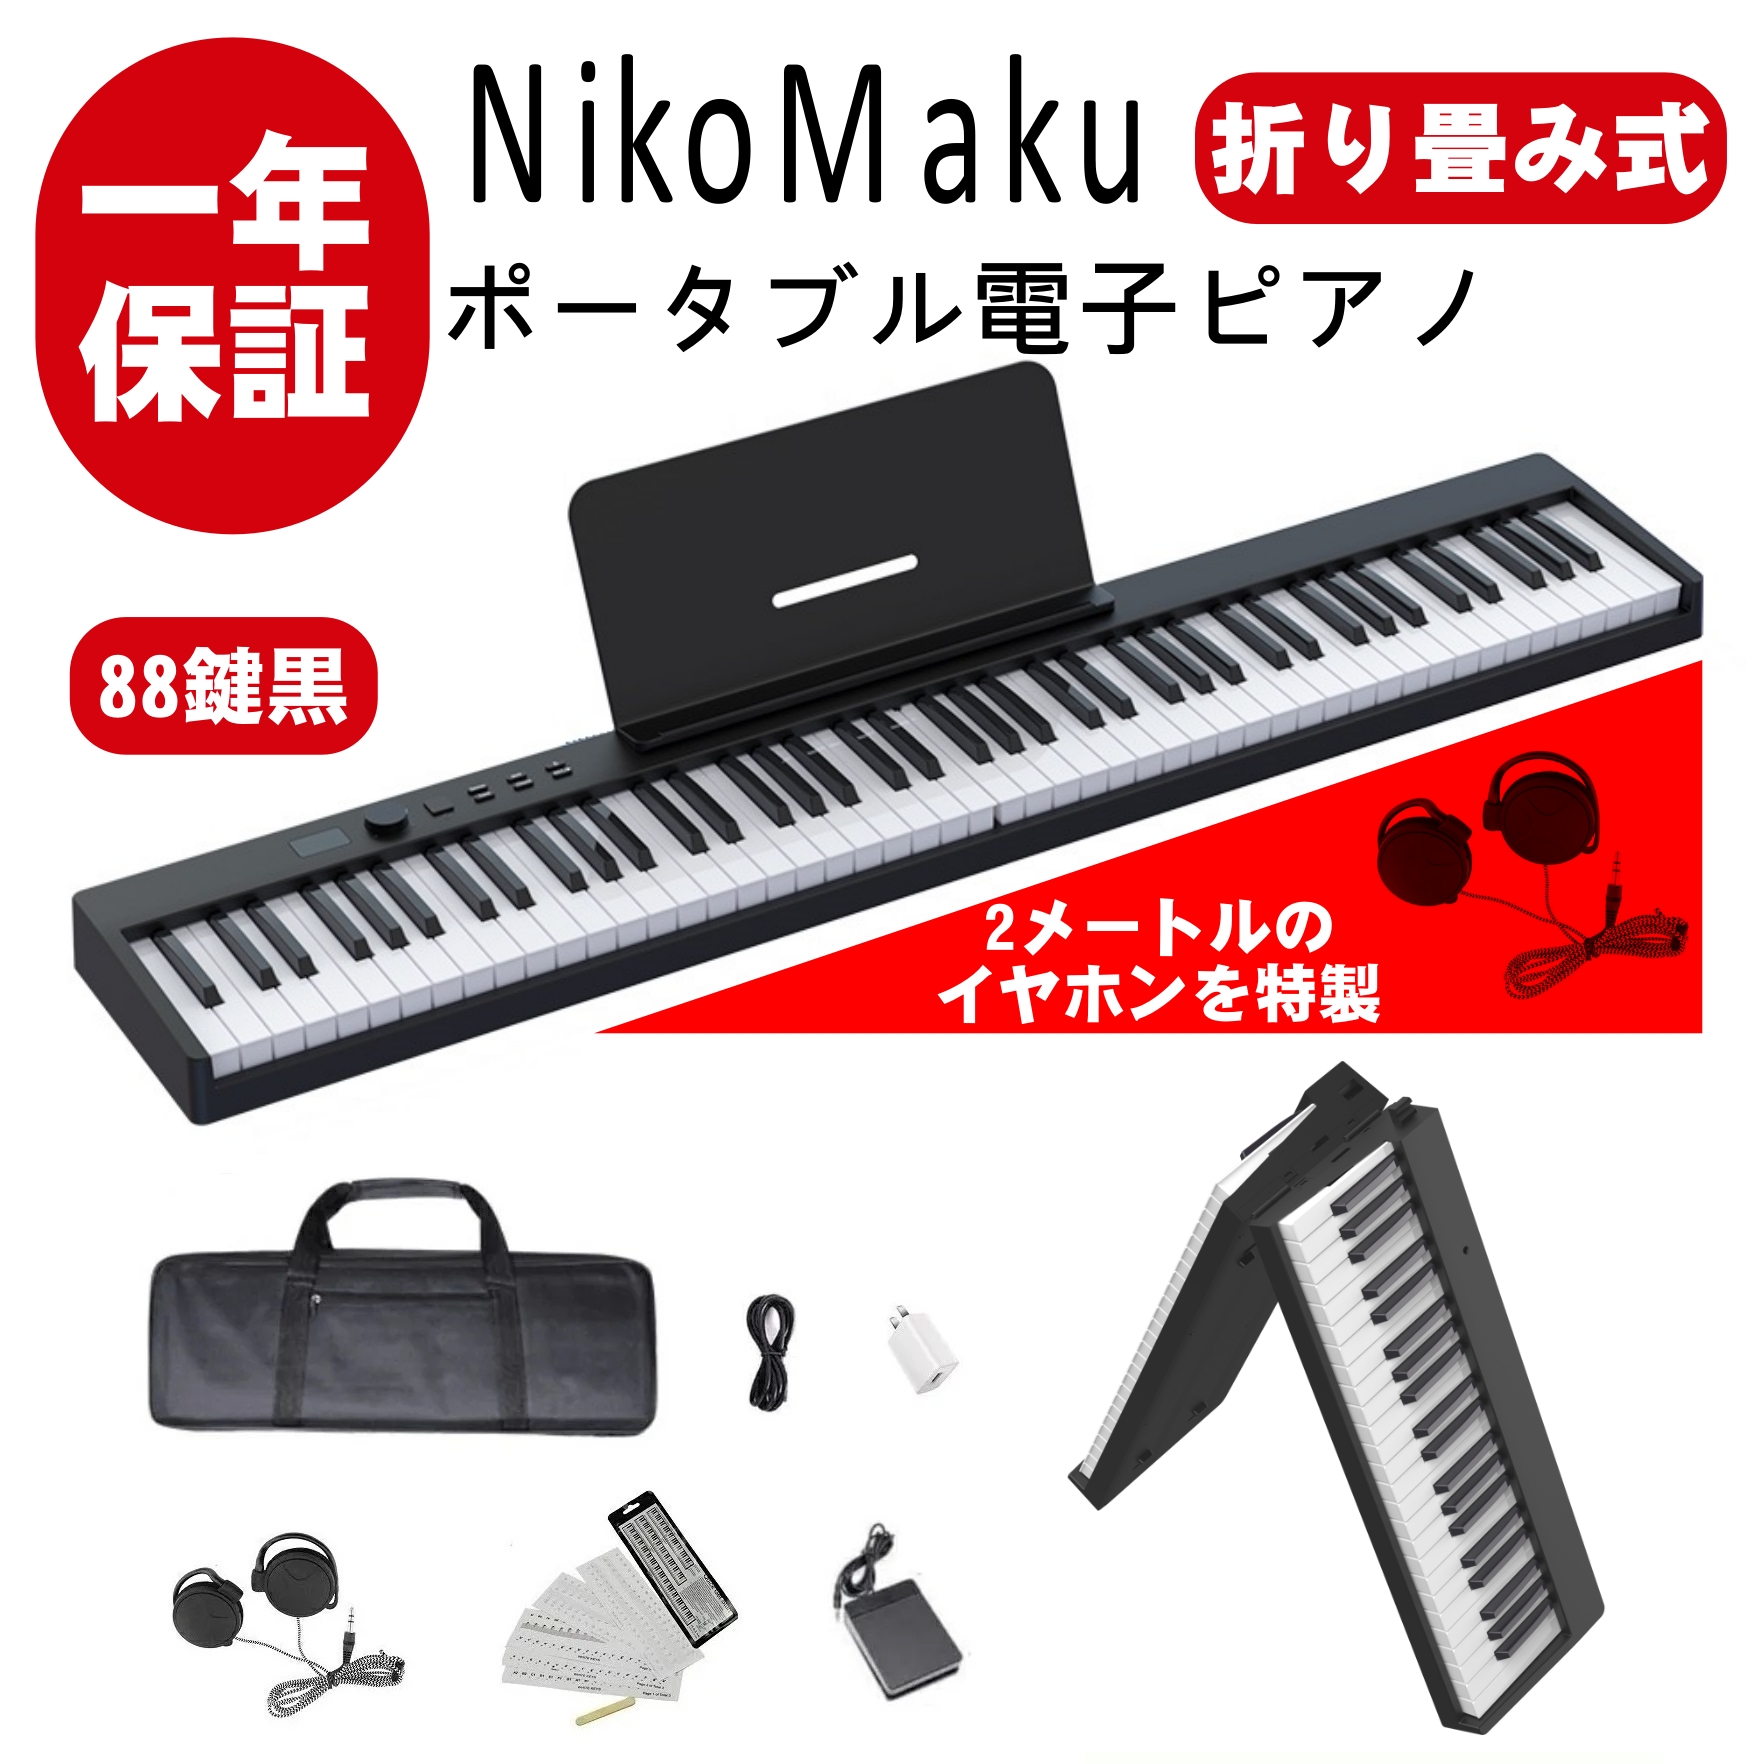 ニコマク NikoMaku 電子ピアノ 88鍵盤 折り畳み式 SWAN-X 黒 ピアノと同じ鍵盤サイズ コンパクト 高音質 軽量 充電型 MIDI対応  ペダル ソフトケース 鍵盤シール 練習用イヤホン付き | HopeStarショップ